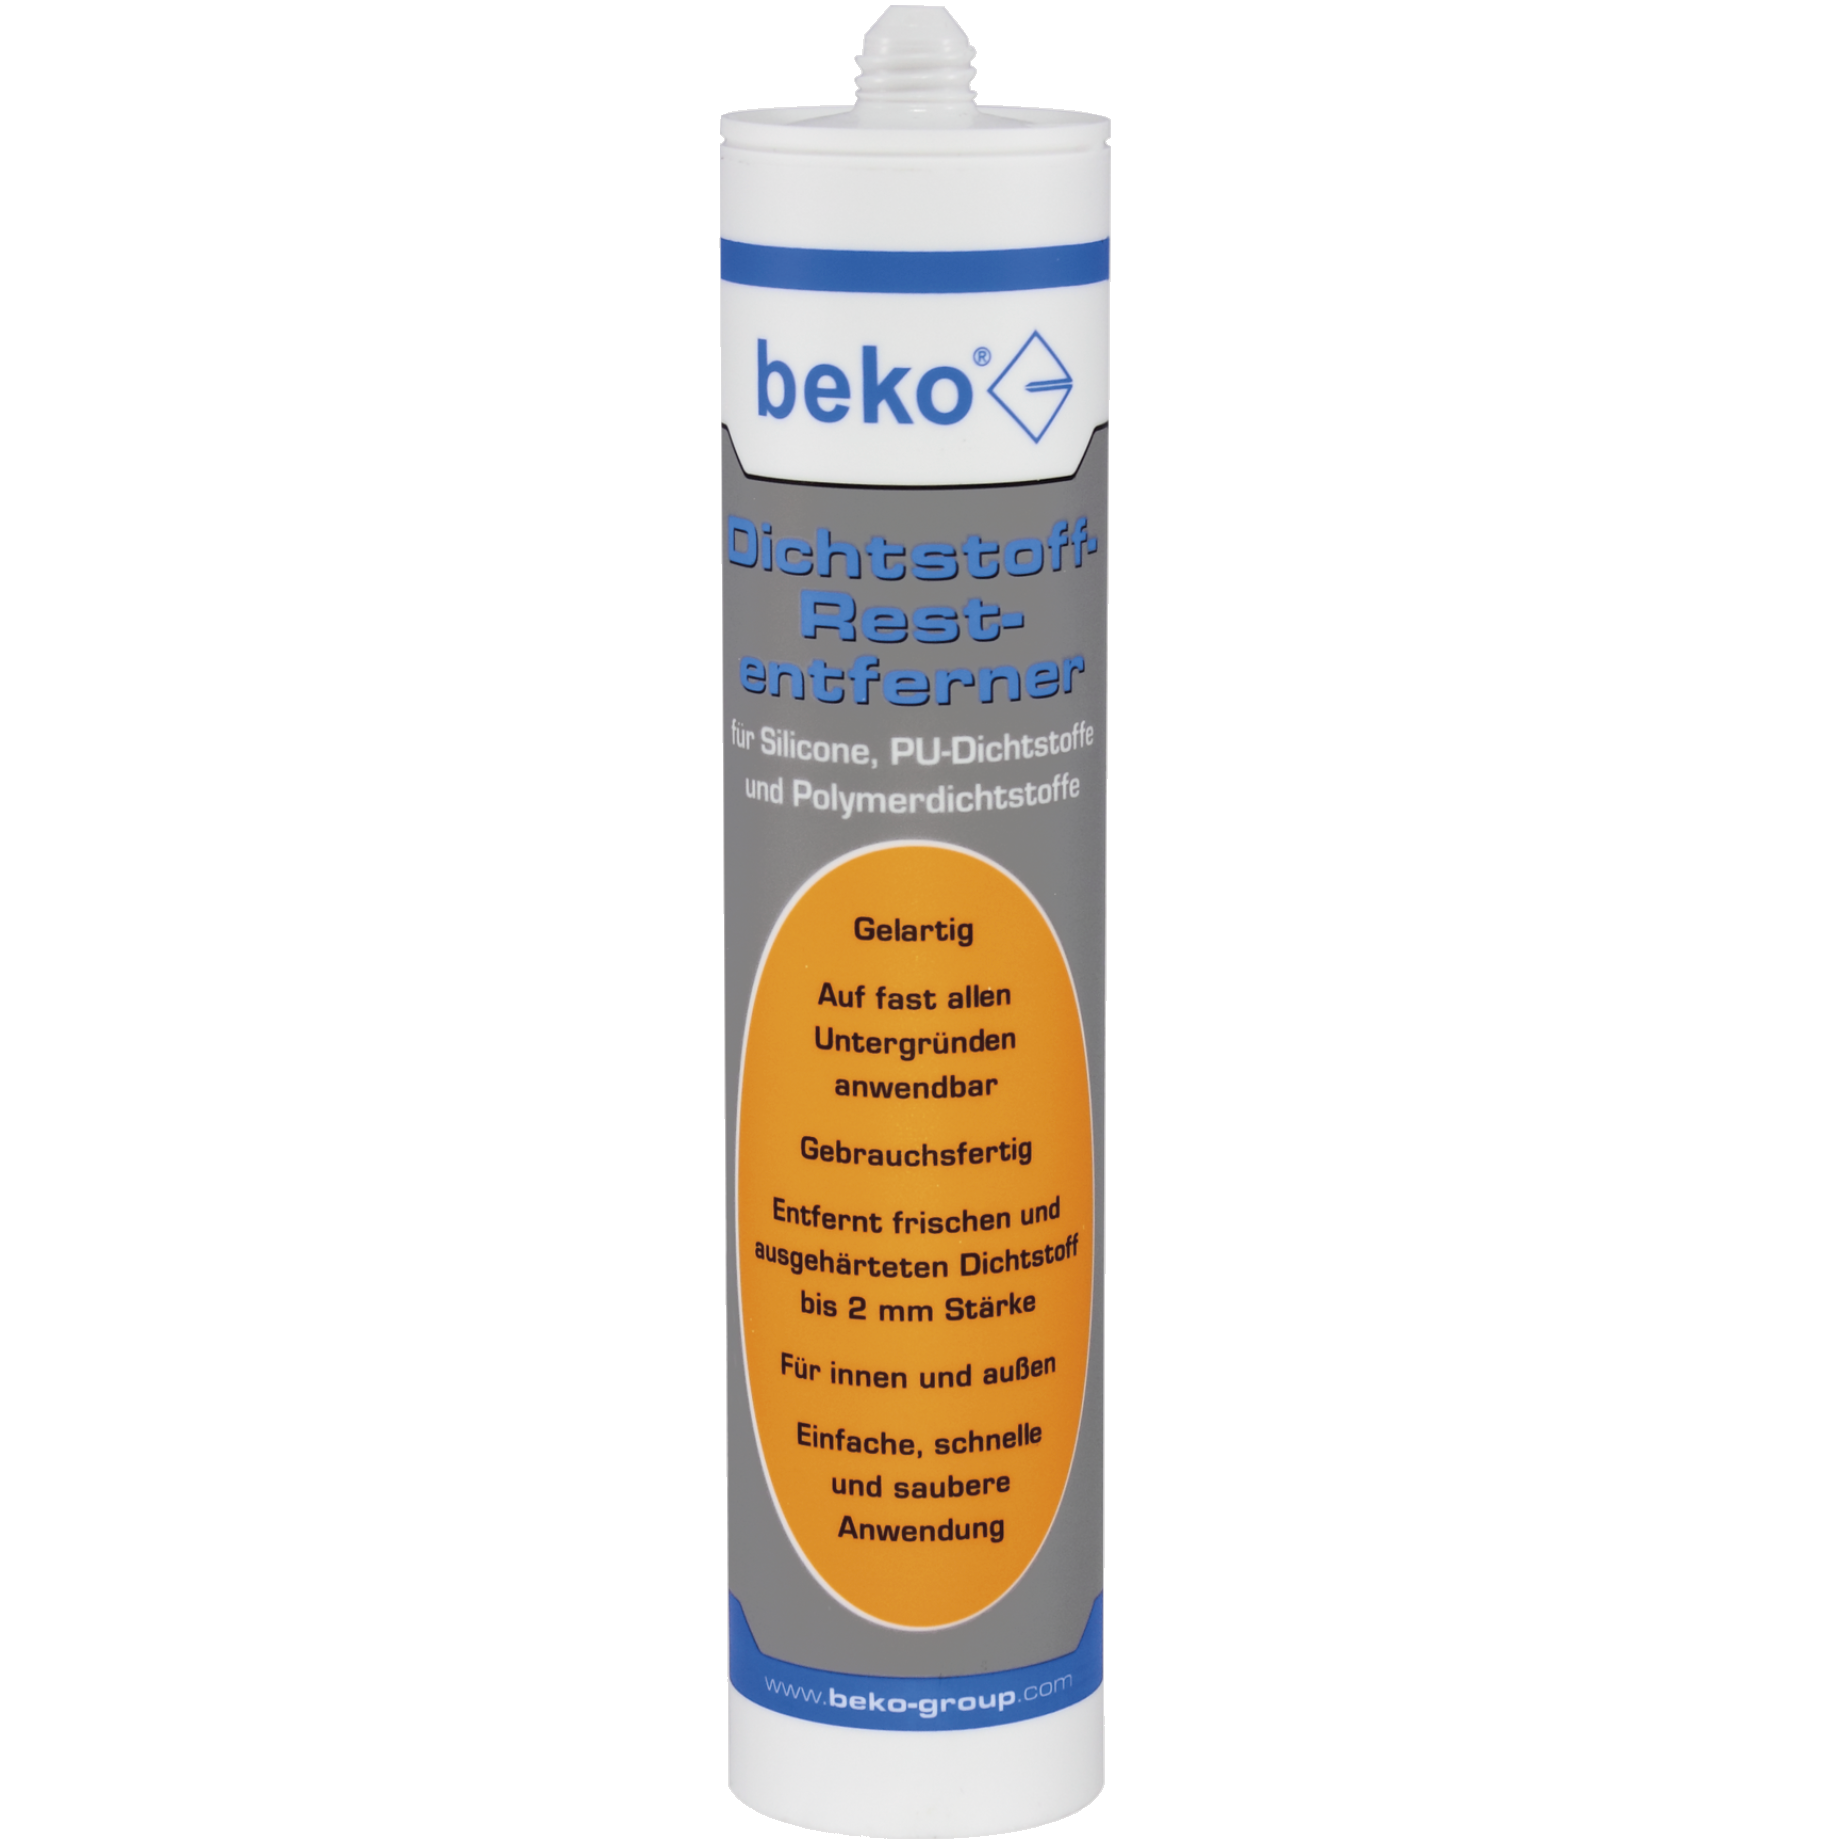 beko® Dichtstoff-Restentferner